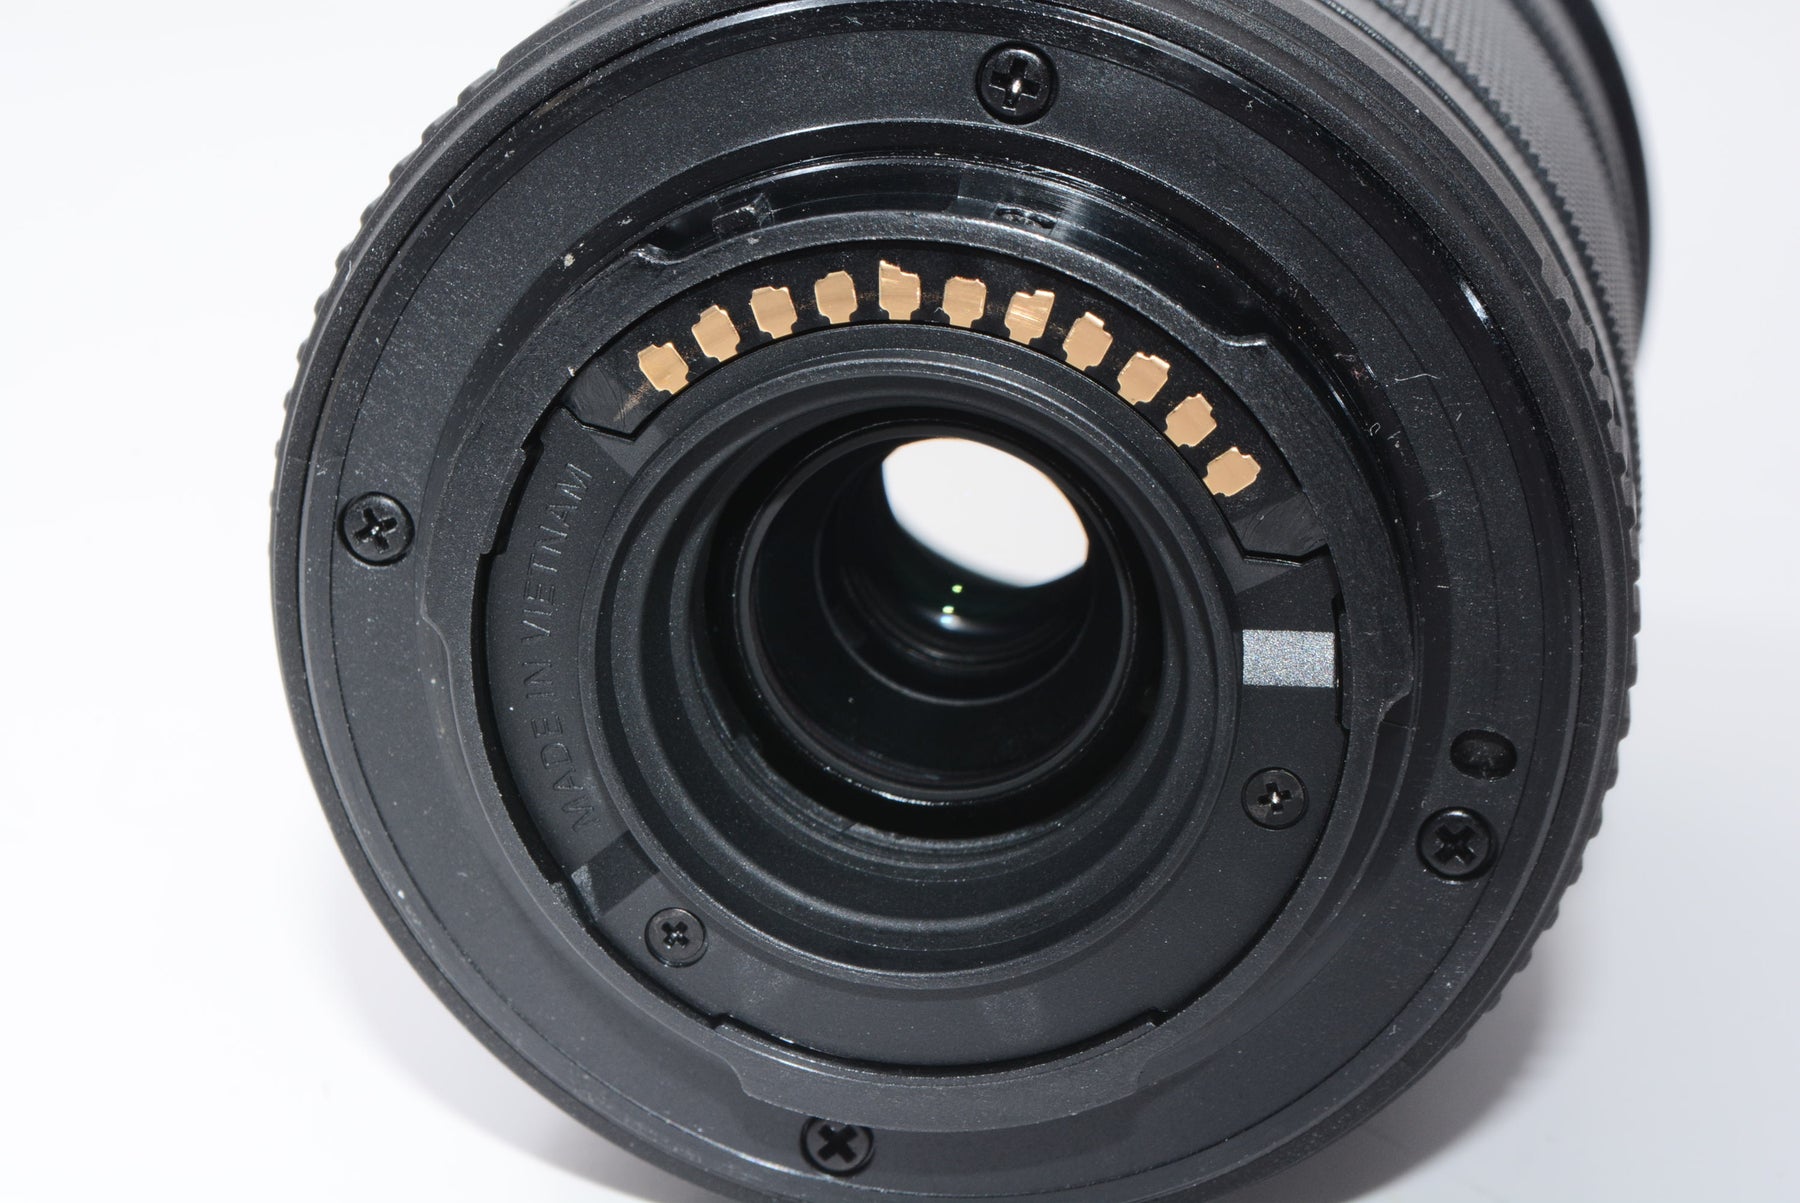 【外観特上級】OLYMPUS 望遠ズームレンズ M.ZUIKO DIGITAL ED 40-150mm F4.0-5.6 R ブラック